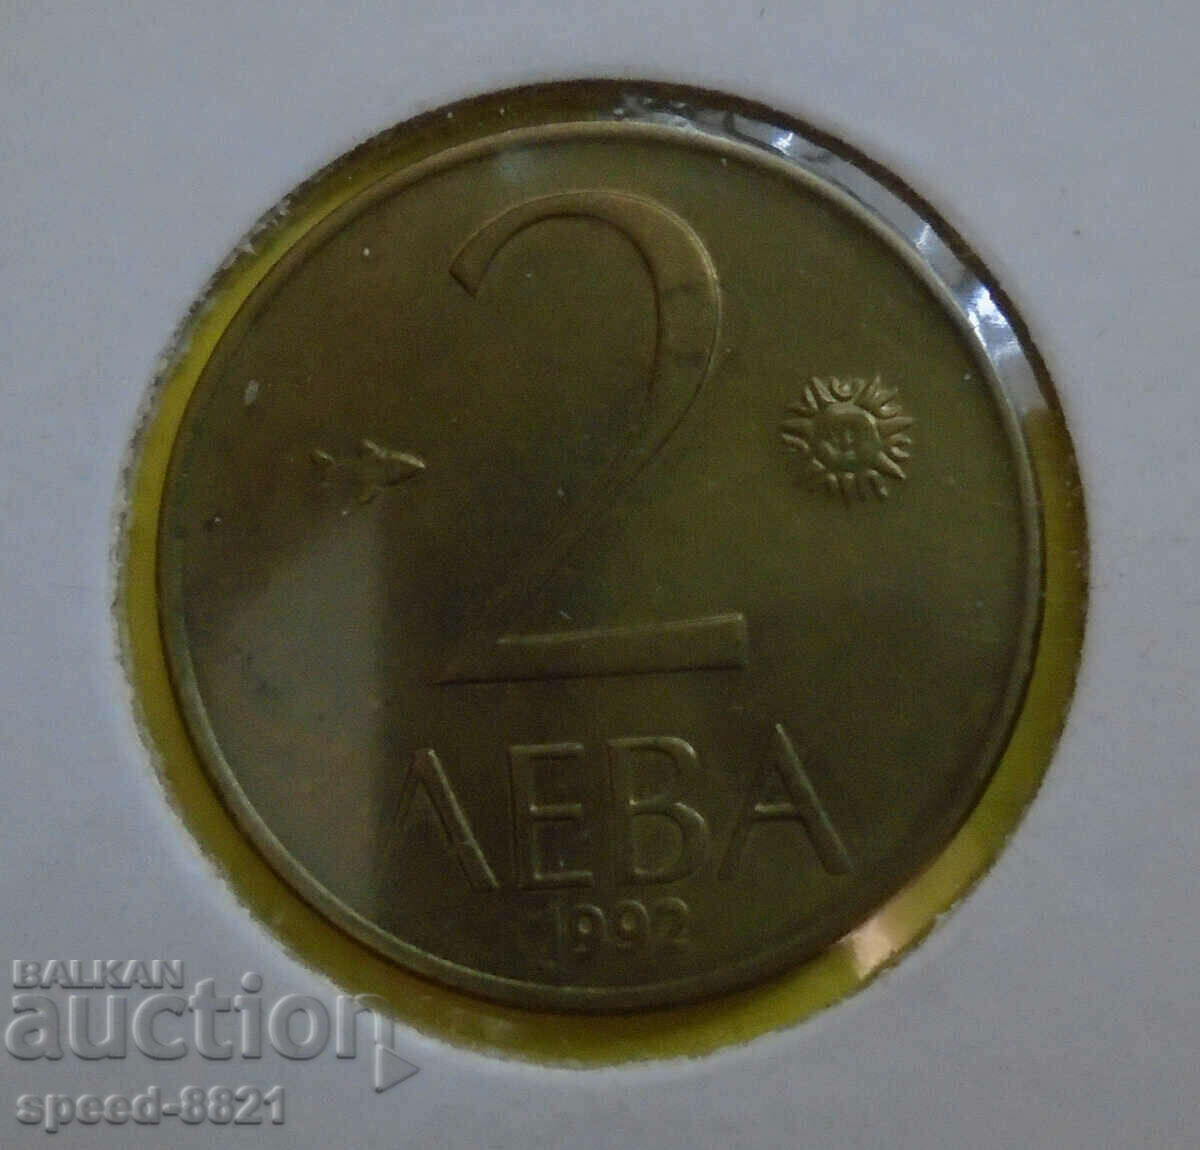 2 лева 1992 монета България